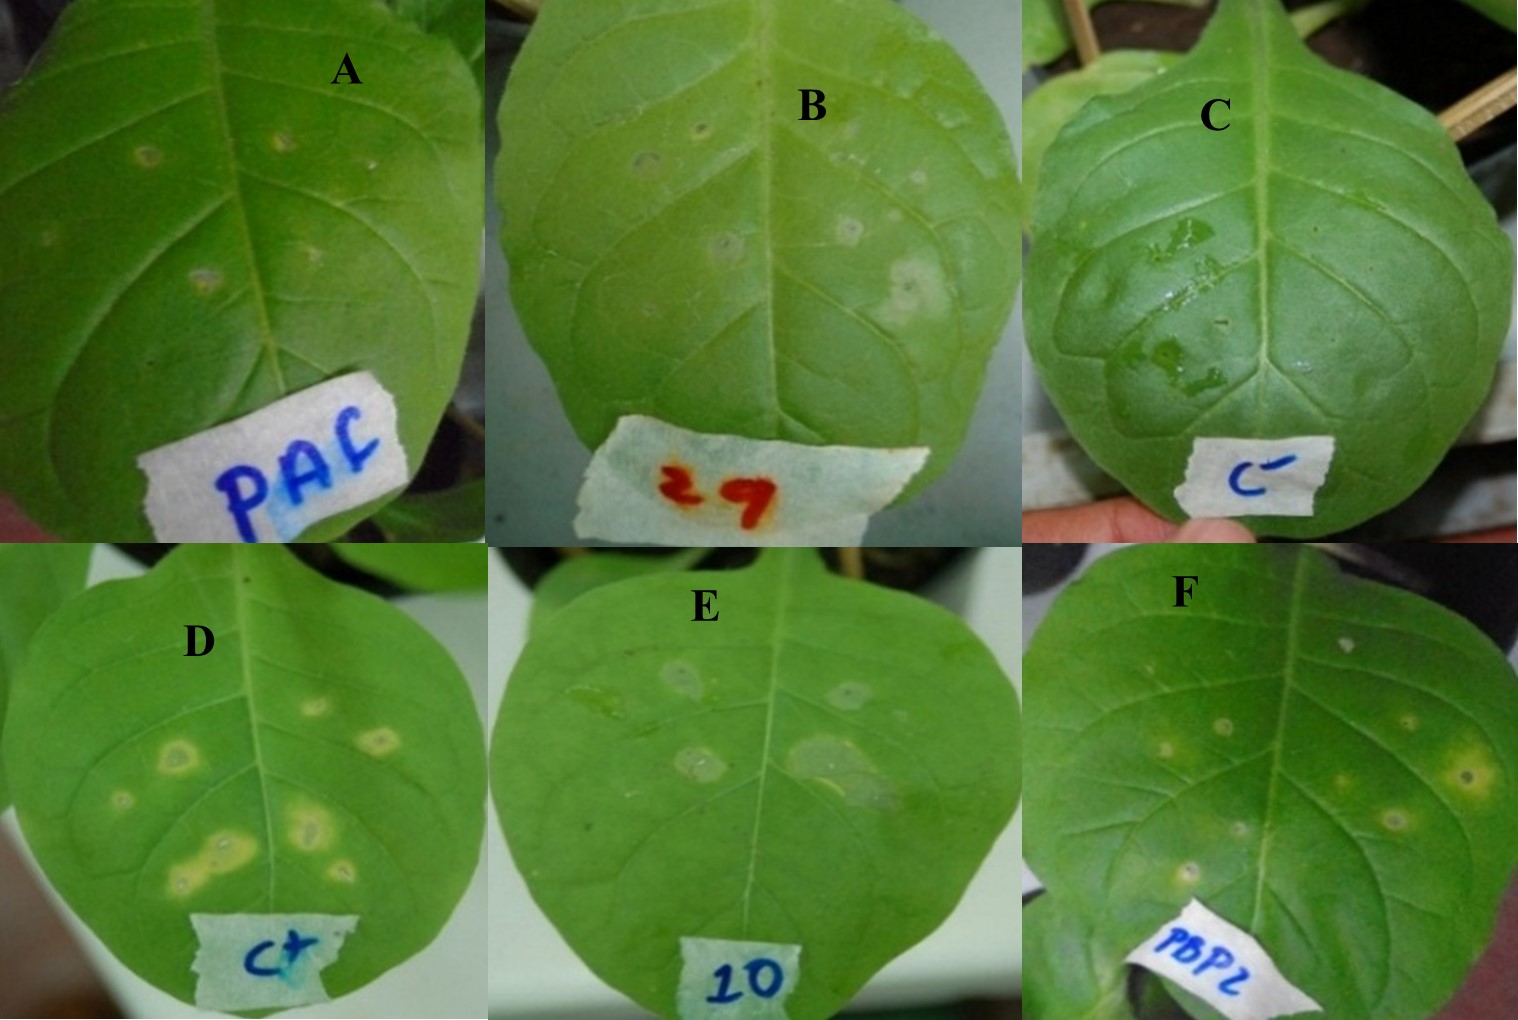 Reacción de hipersensibilidad en hojas de tabaco inducida por aislados
bacterianos  

provenientes
de tejido de café. (A) P. syringae., (B, E), P.
cichorii, (C), Control negativo  

(D)
Control positivo, (F) P. corrugata.